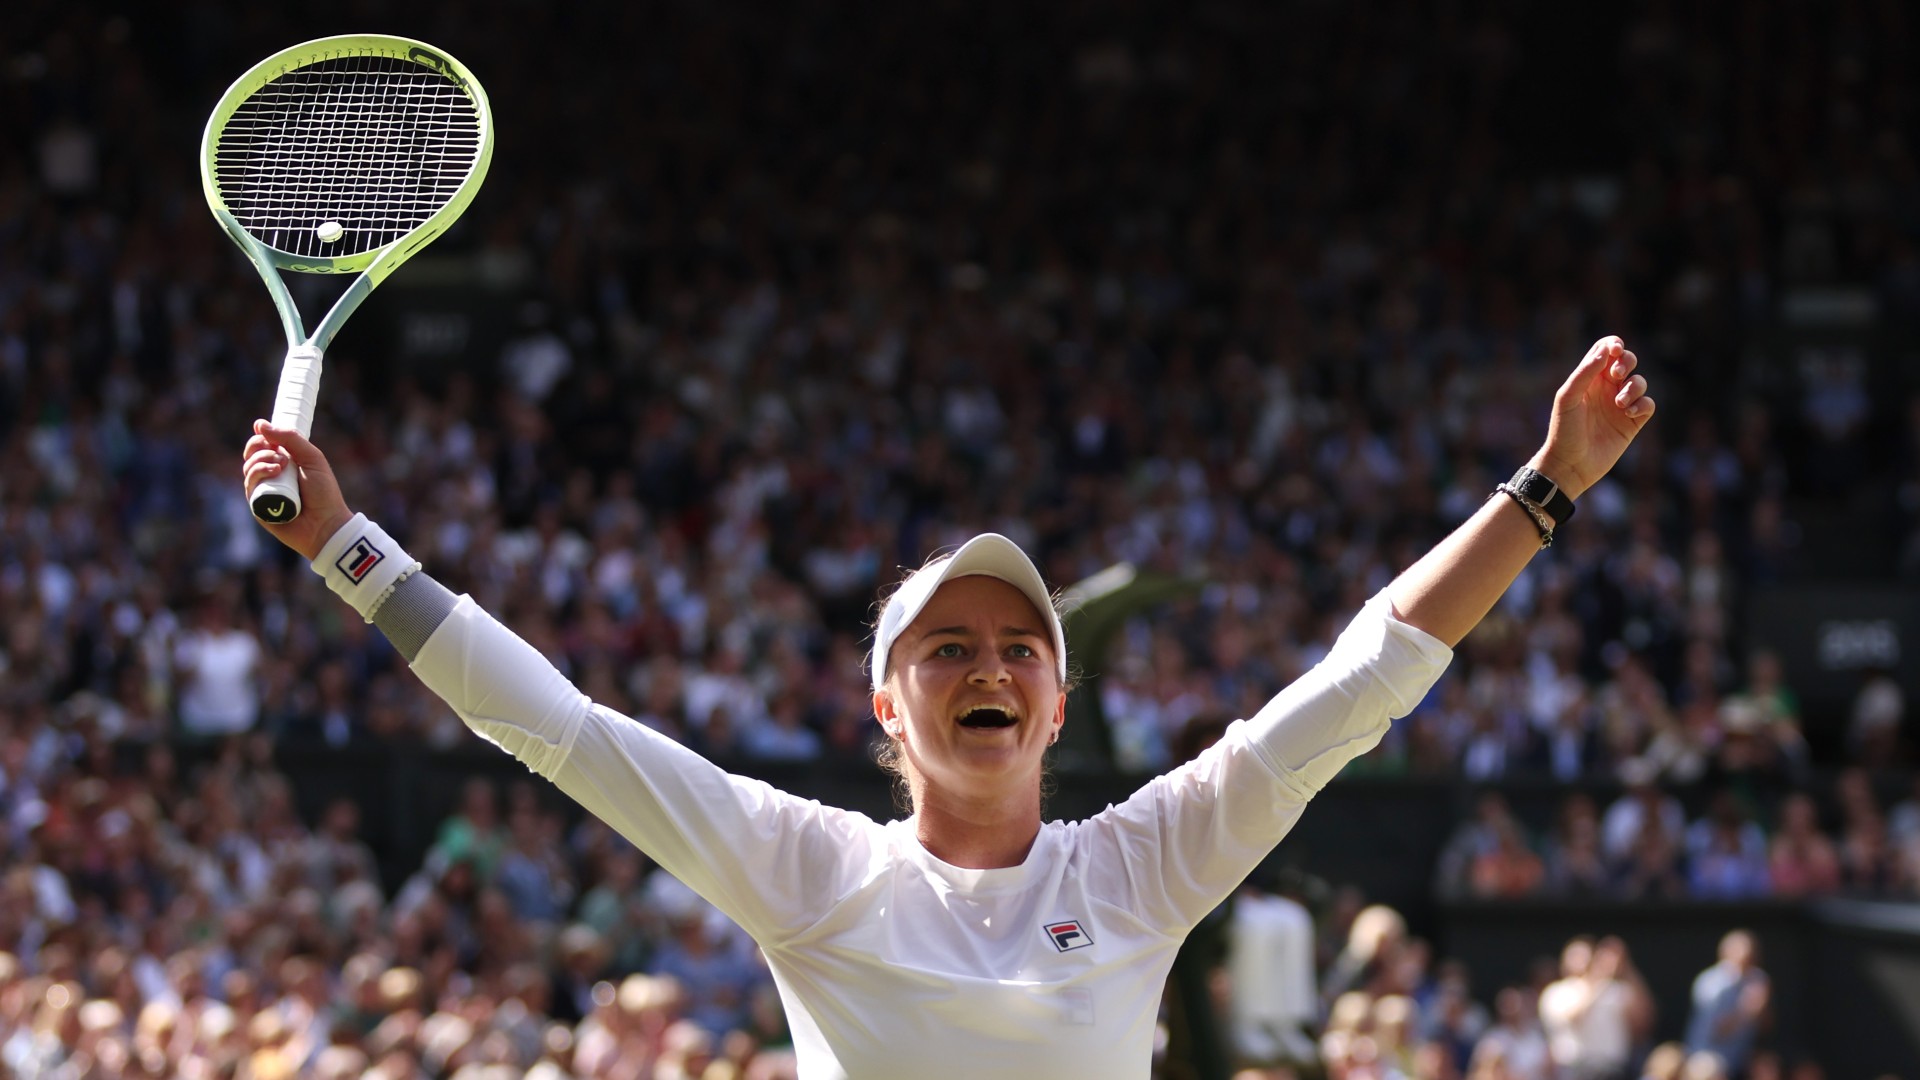 Krejcikova triumphs at Wimbledon